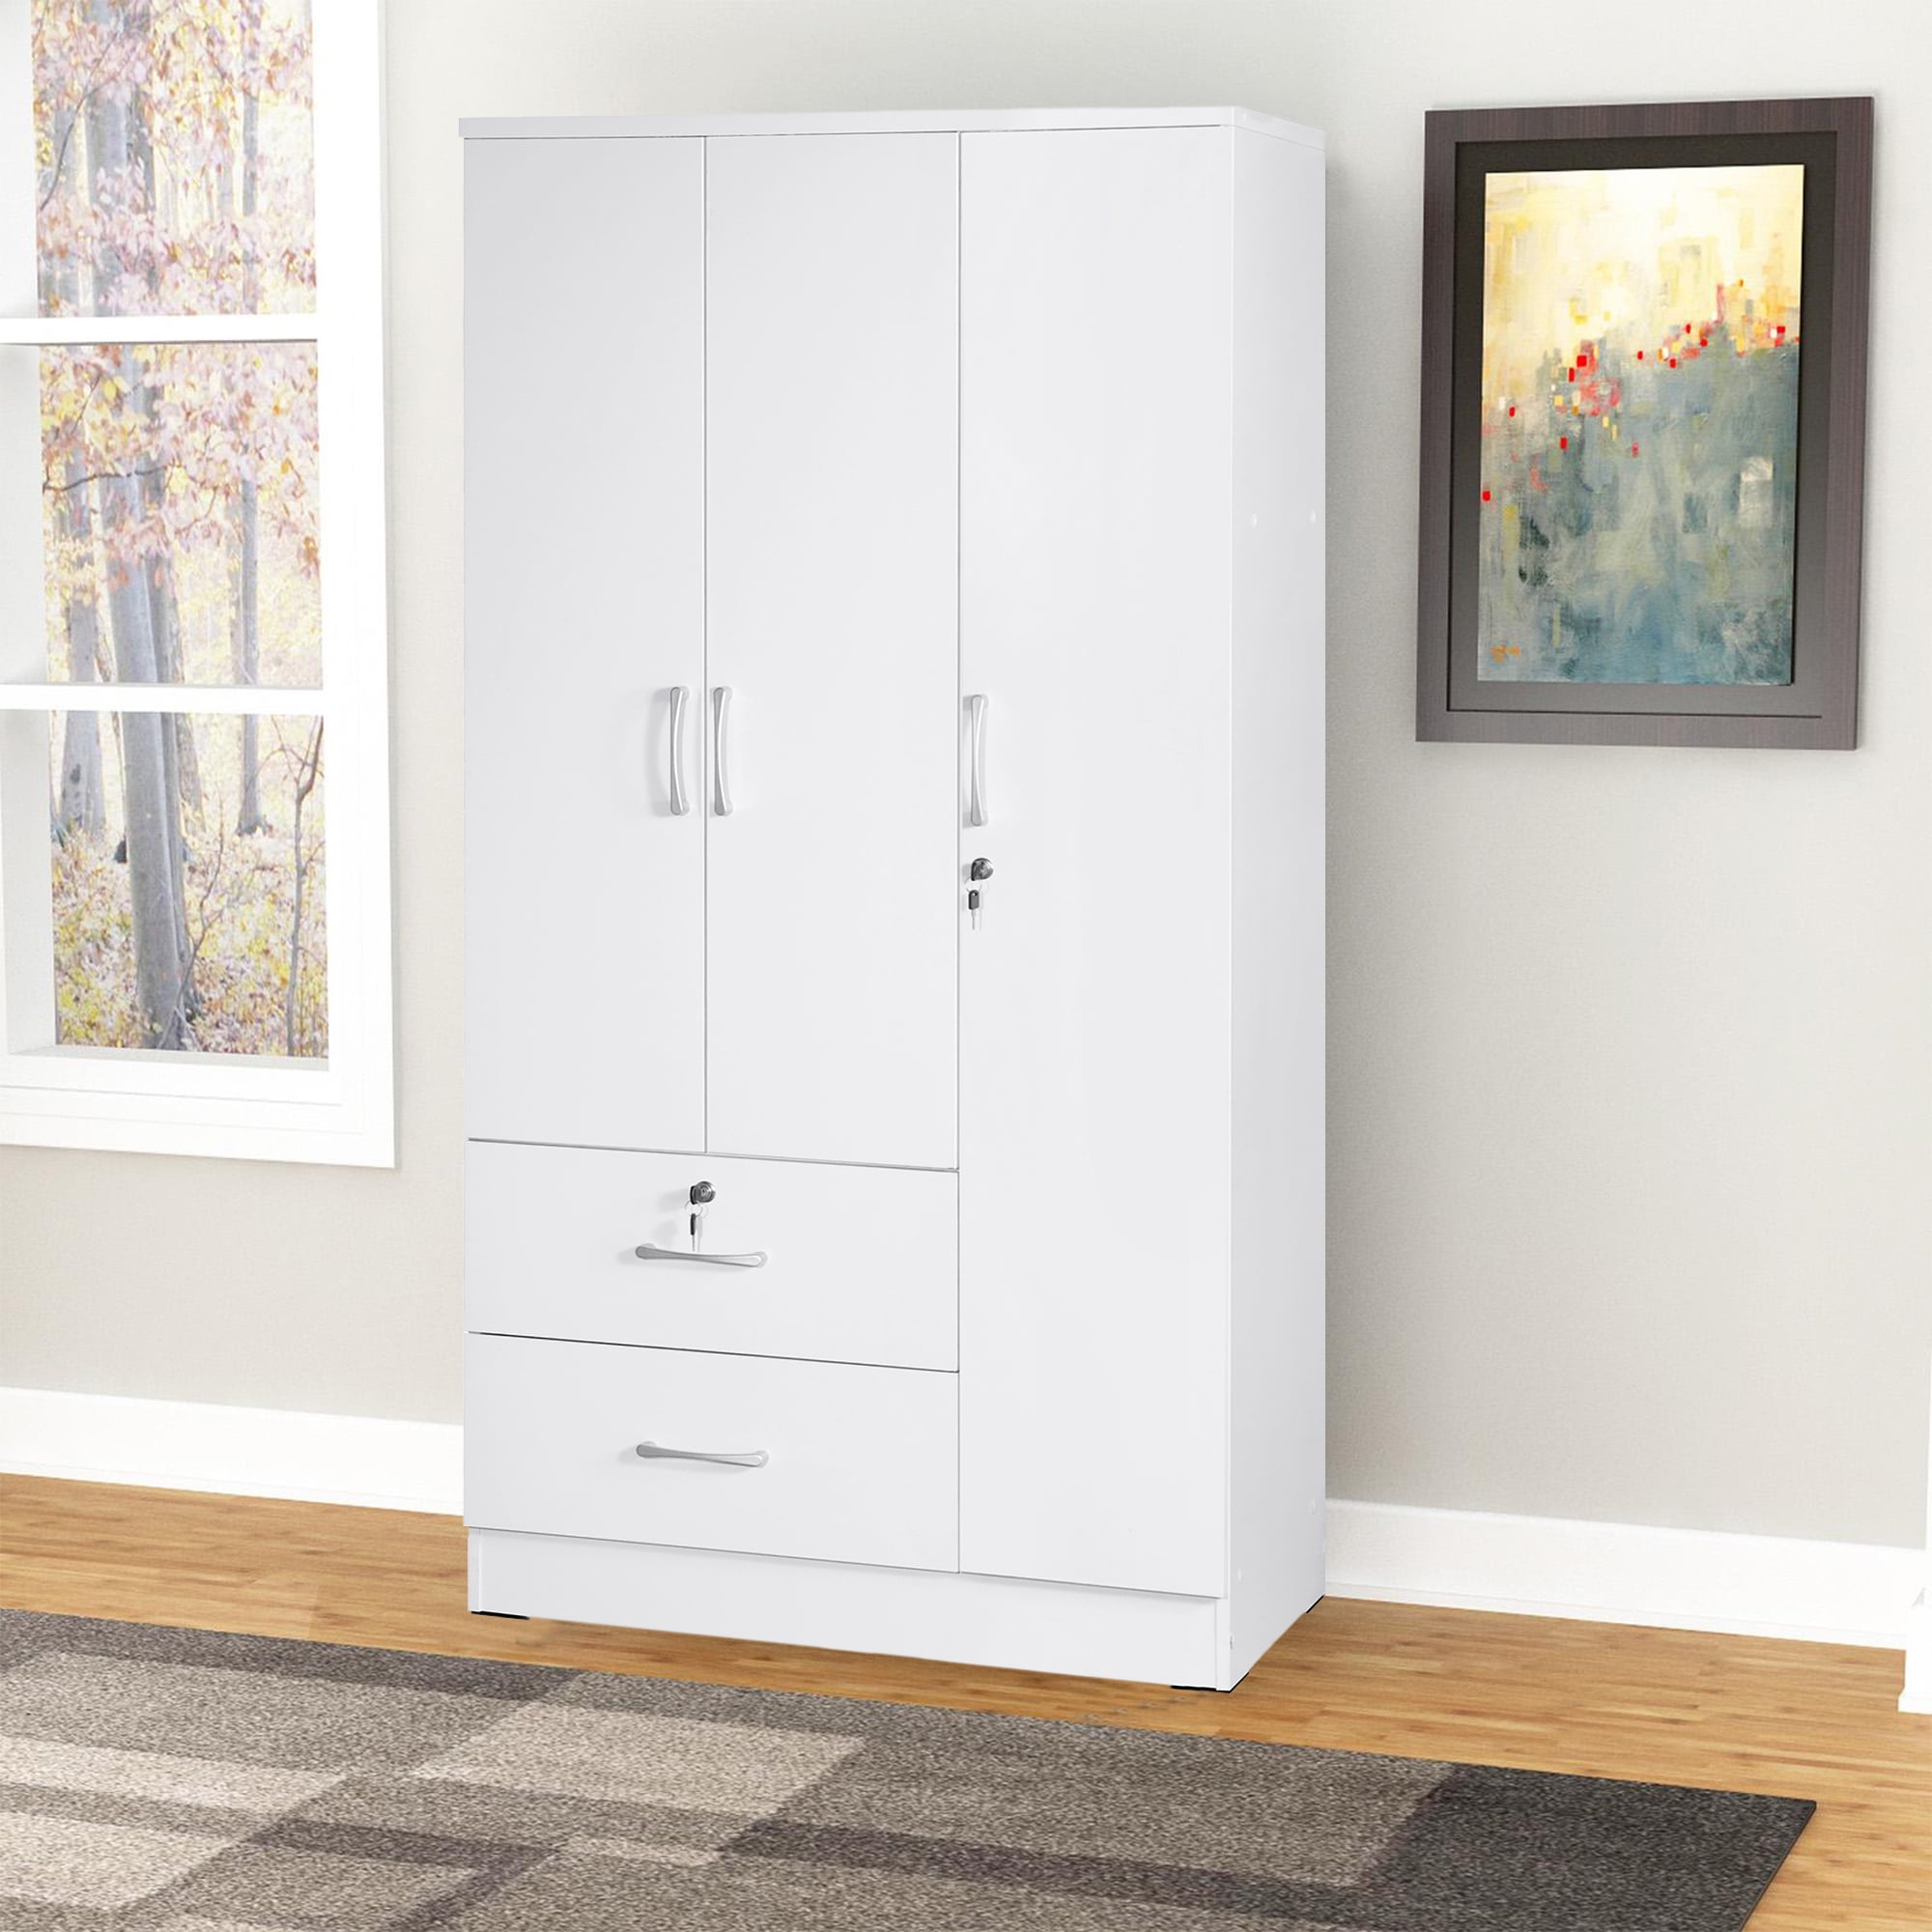 Details about   White Finish Armoire Wooden Wardrobe Storage Cabinet Closet Drawer Organizer 